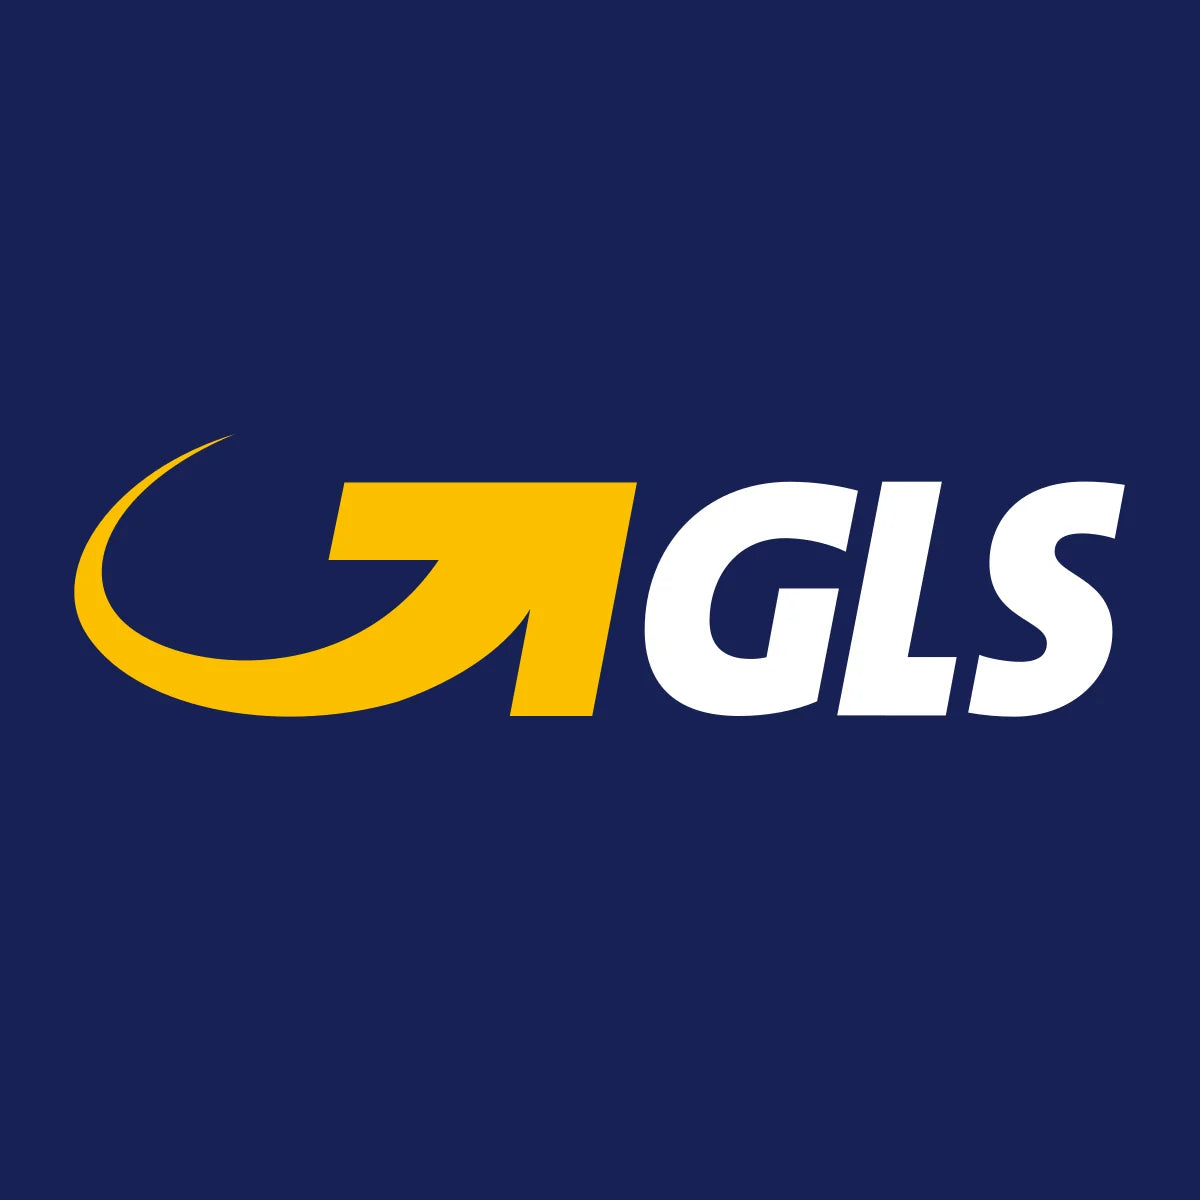 GLS csomagpont és csomagautomata (tájékoztató)